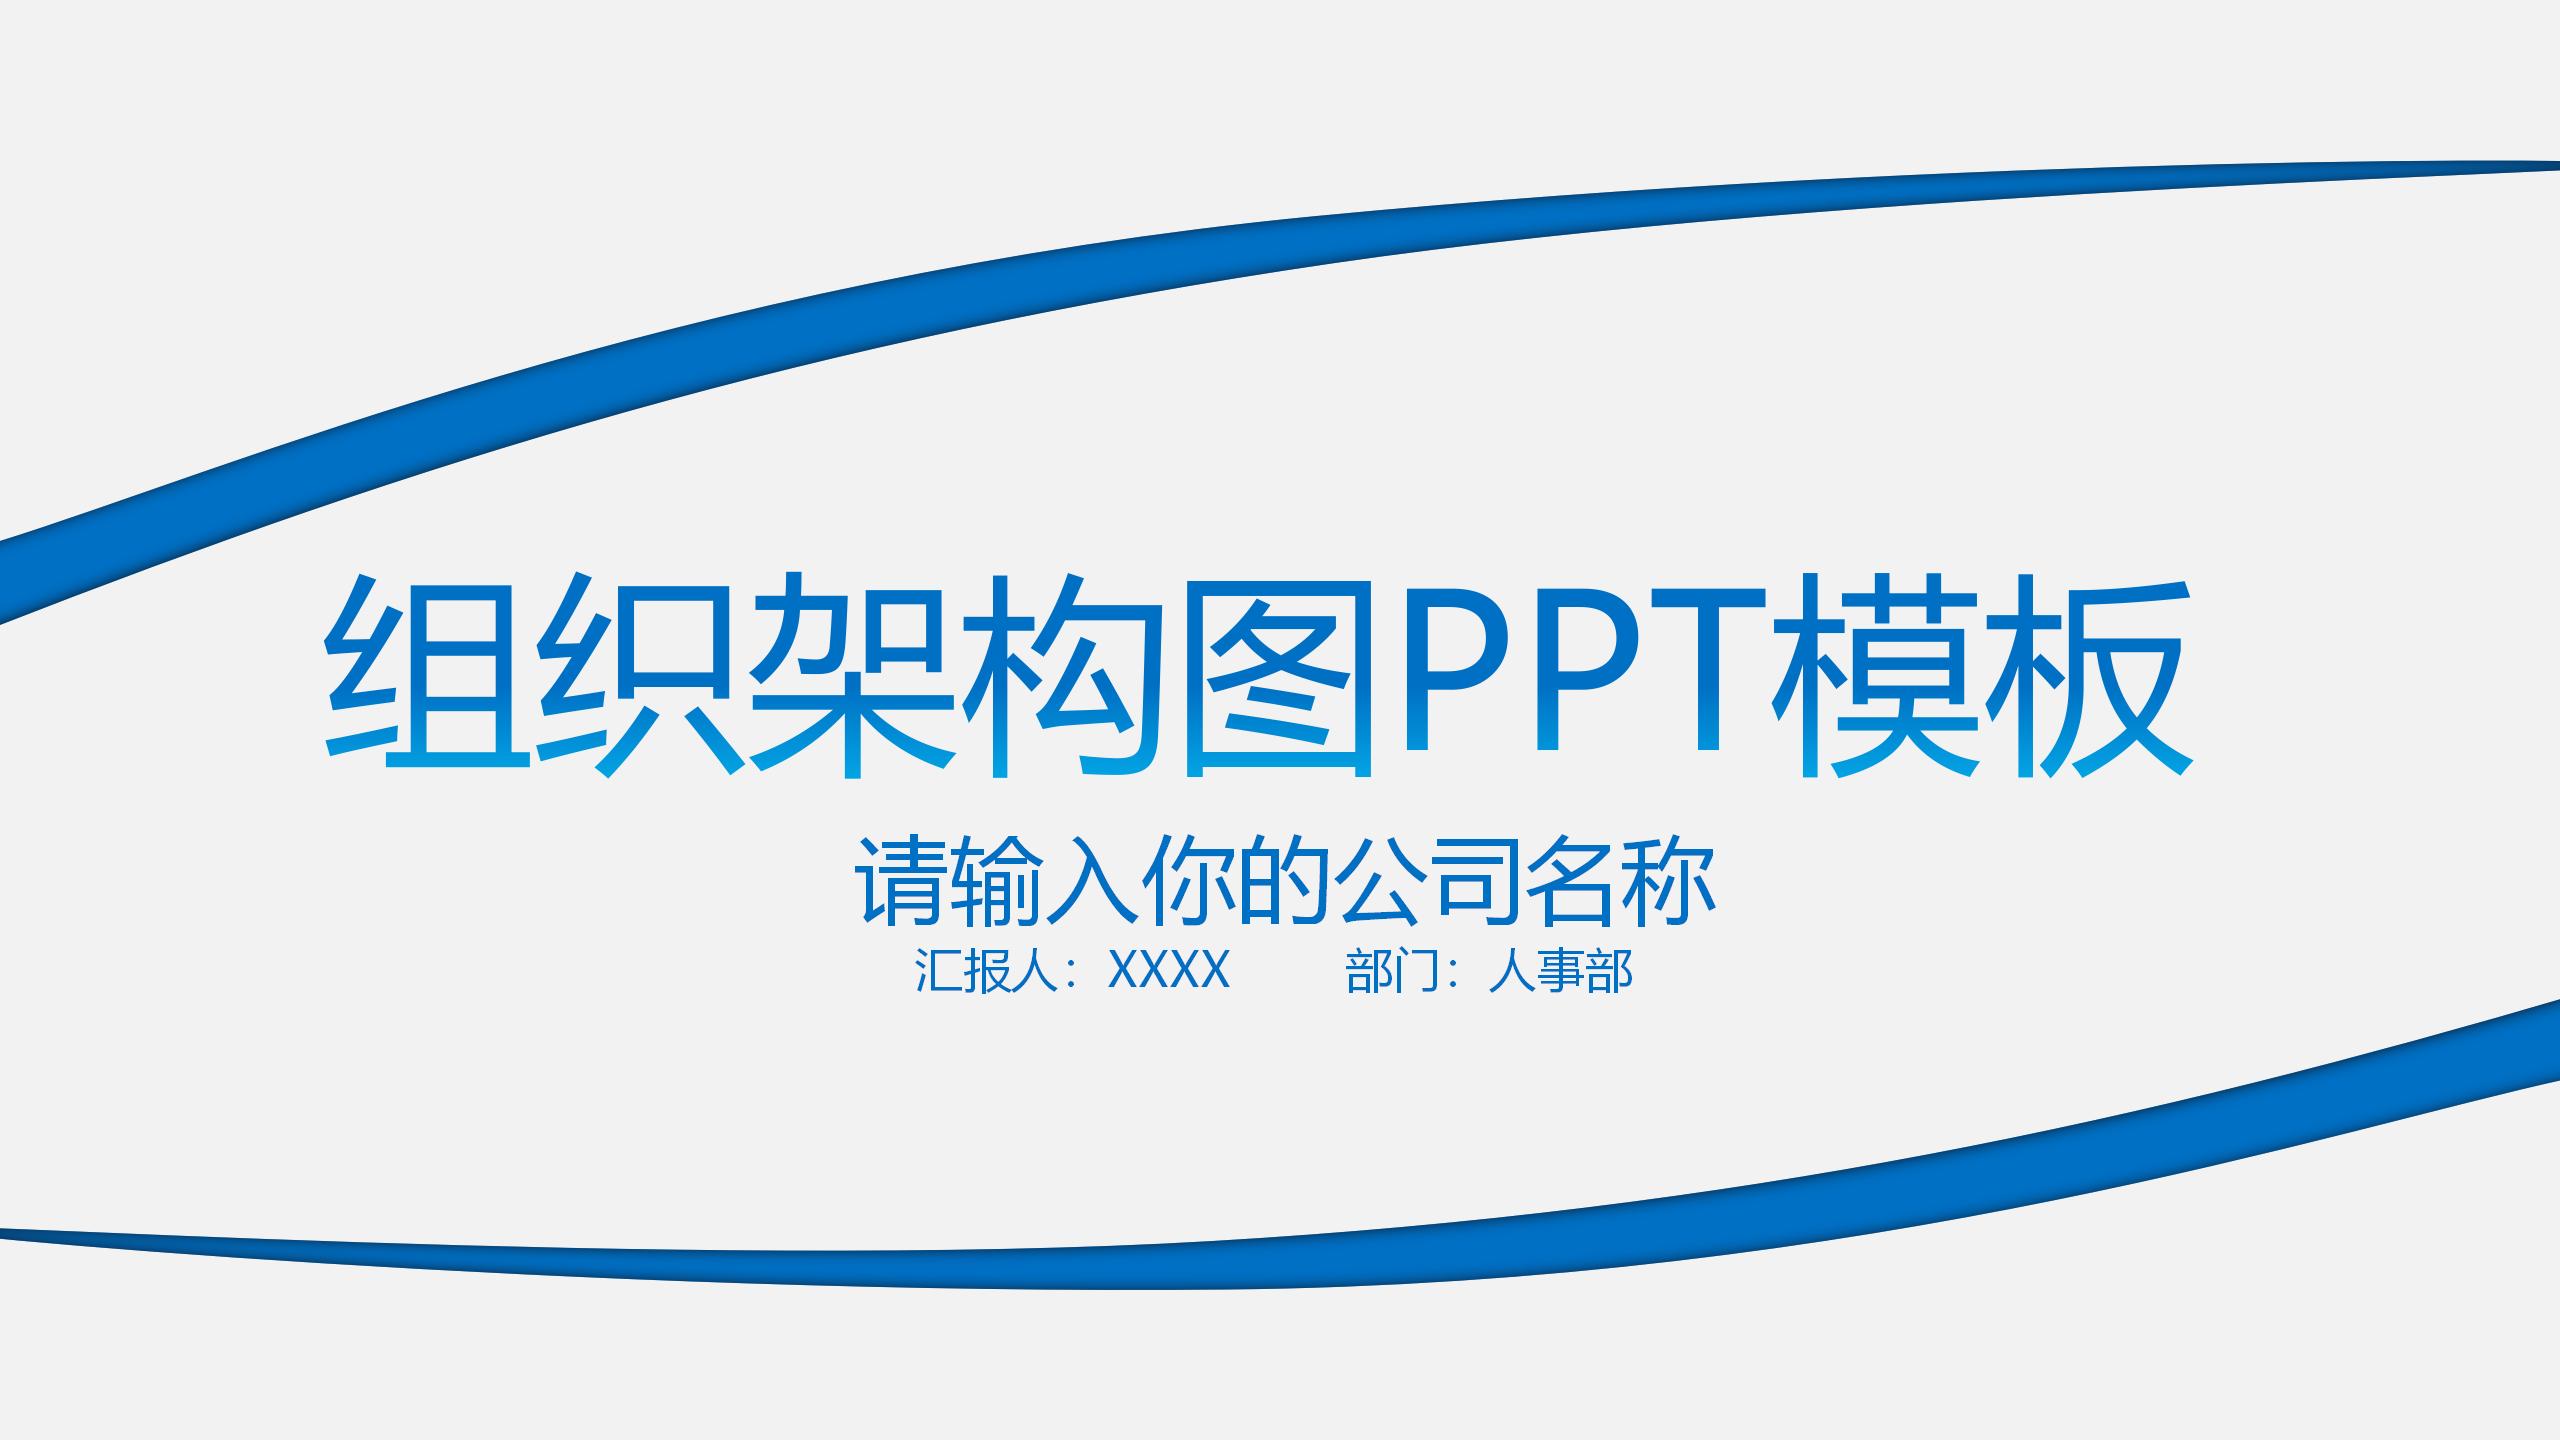 23 蓝色简约企业组织架构图PPT模板_01.jpg